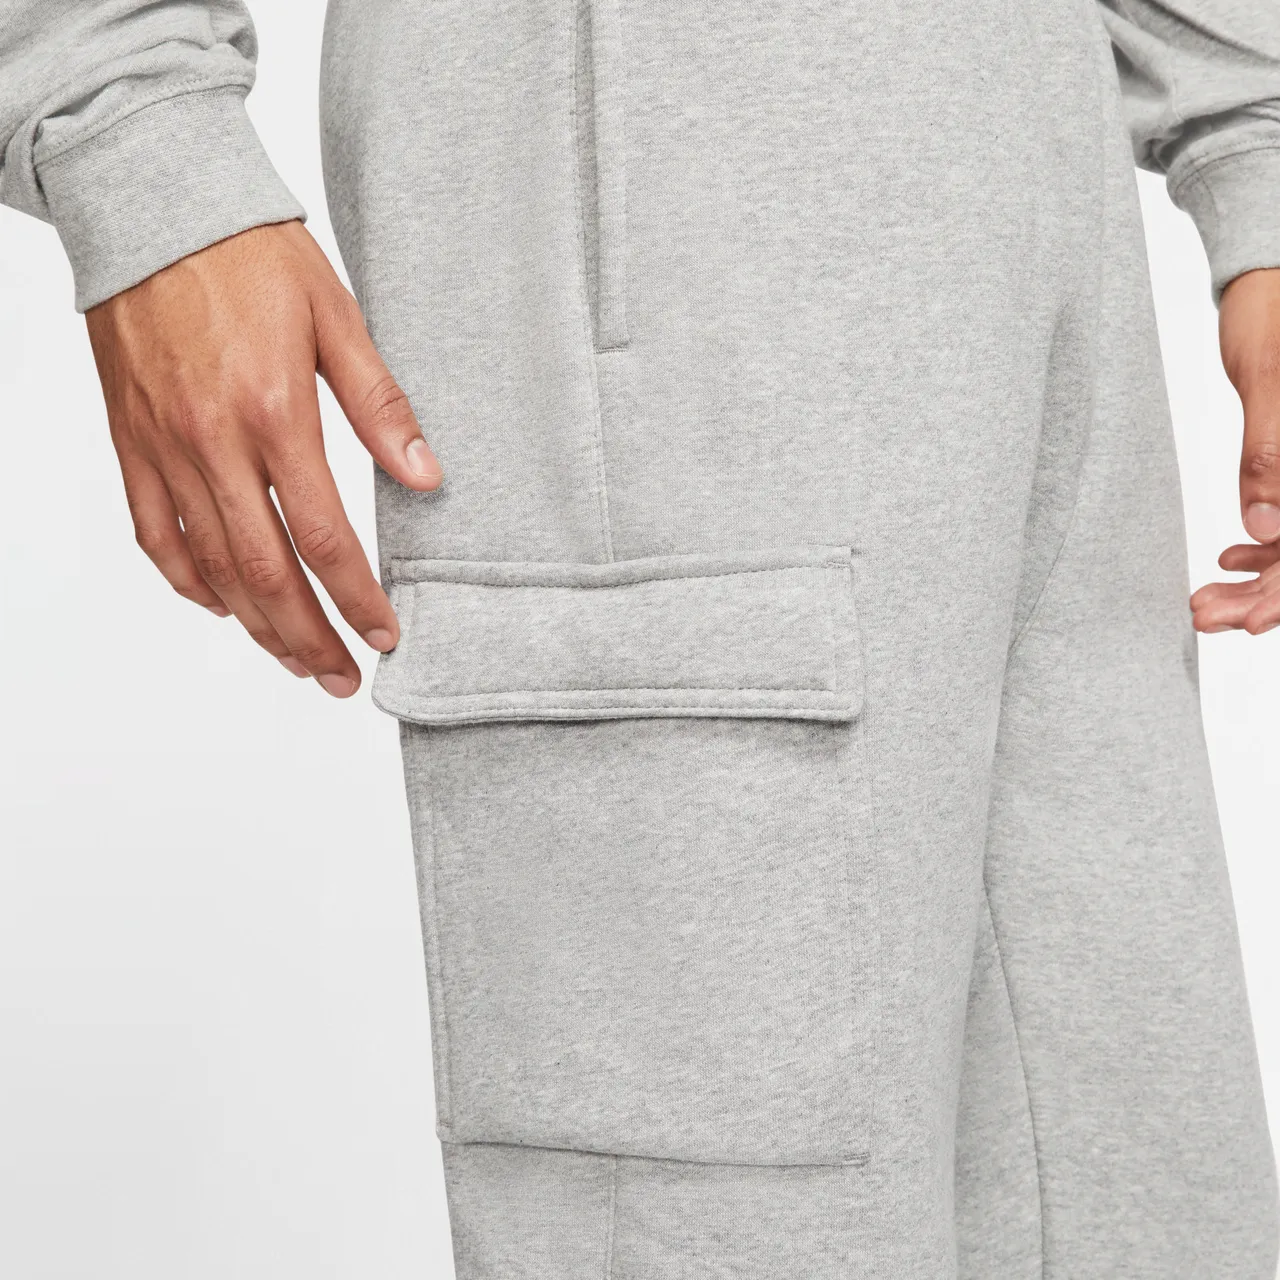 Nike Sportswear Club Fleece Men's Cargo Trousers - Grey - Cotton